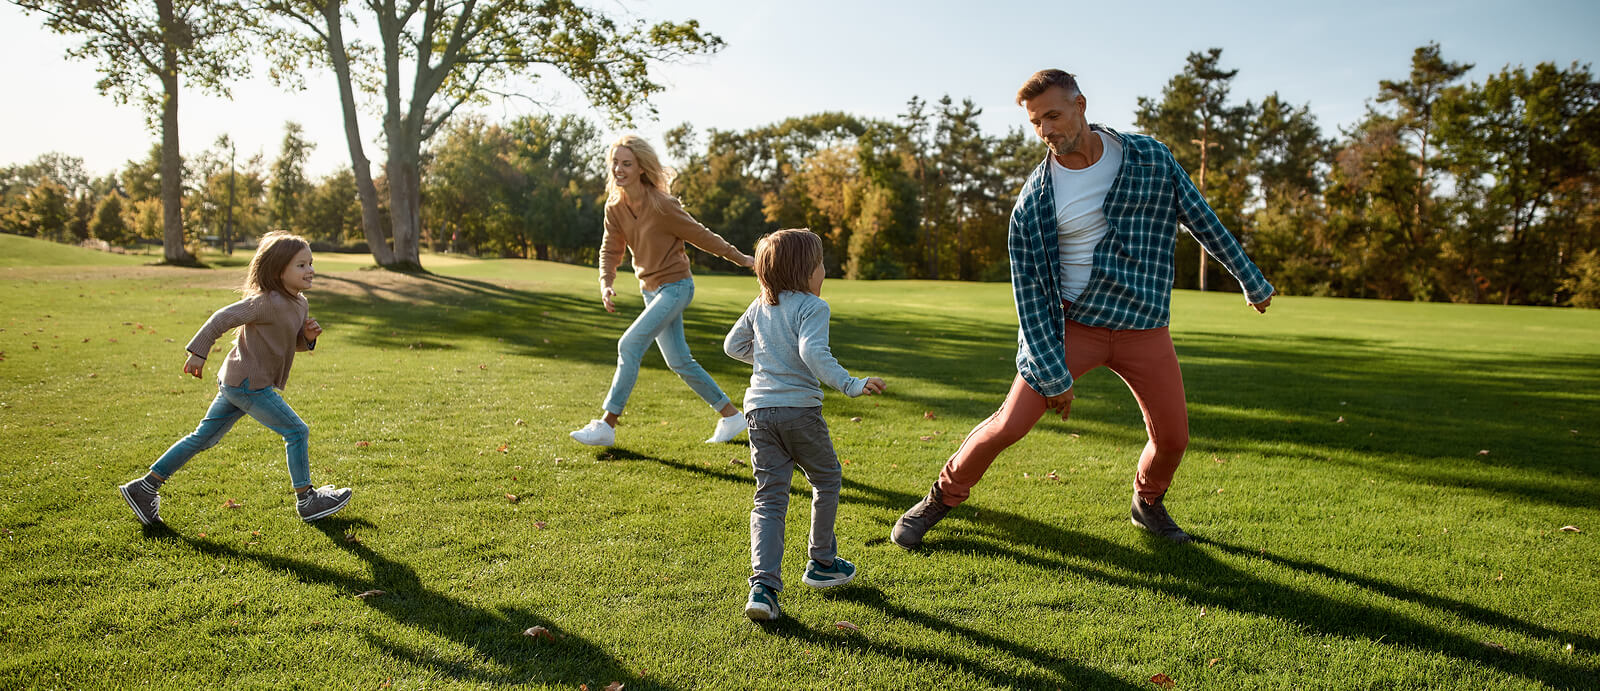 Familia corriendo al aire libre teniendo en cuenta la importancia del juego libre para el desarrollo de sus hijos.